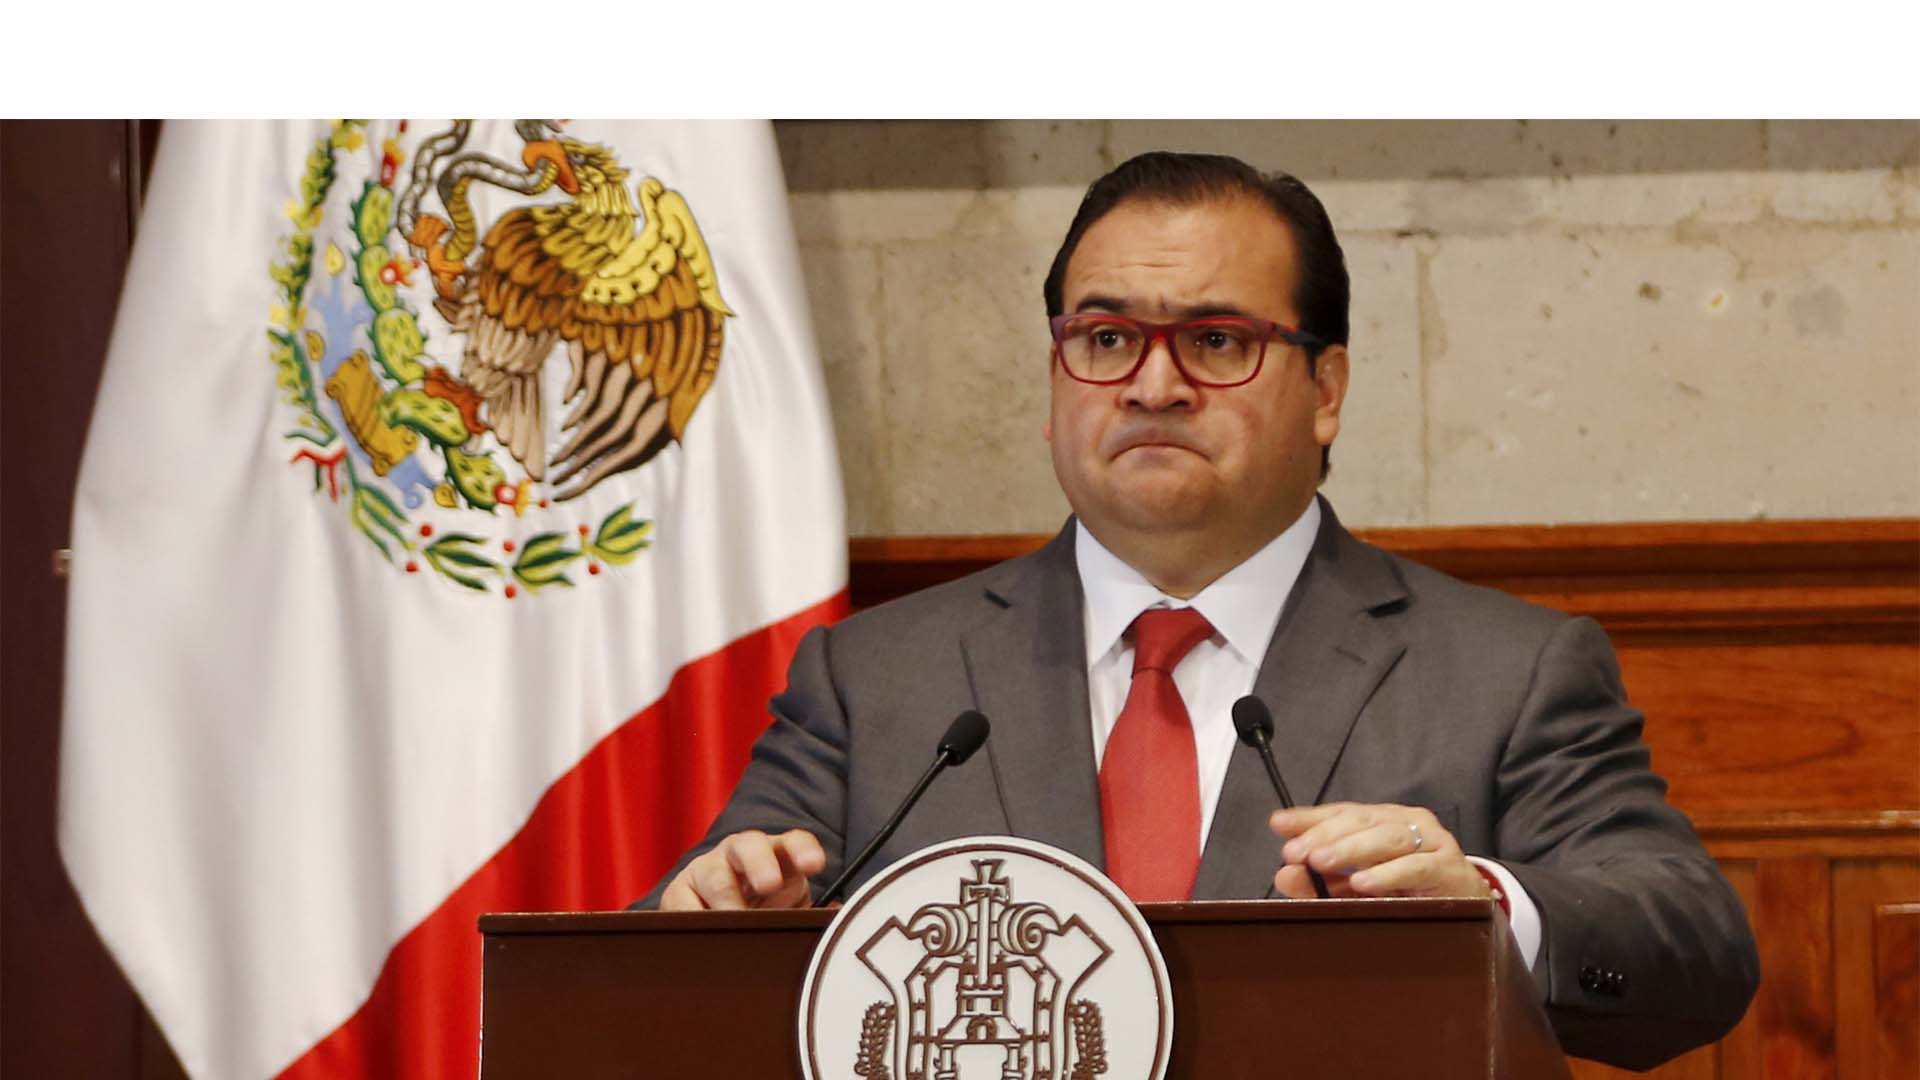 El ex gobernador de Veracruz culminaba su gestión mandataria el próximo 30 de noviembre pero hace una semana pidió licencia y se desconoce su paradero